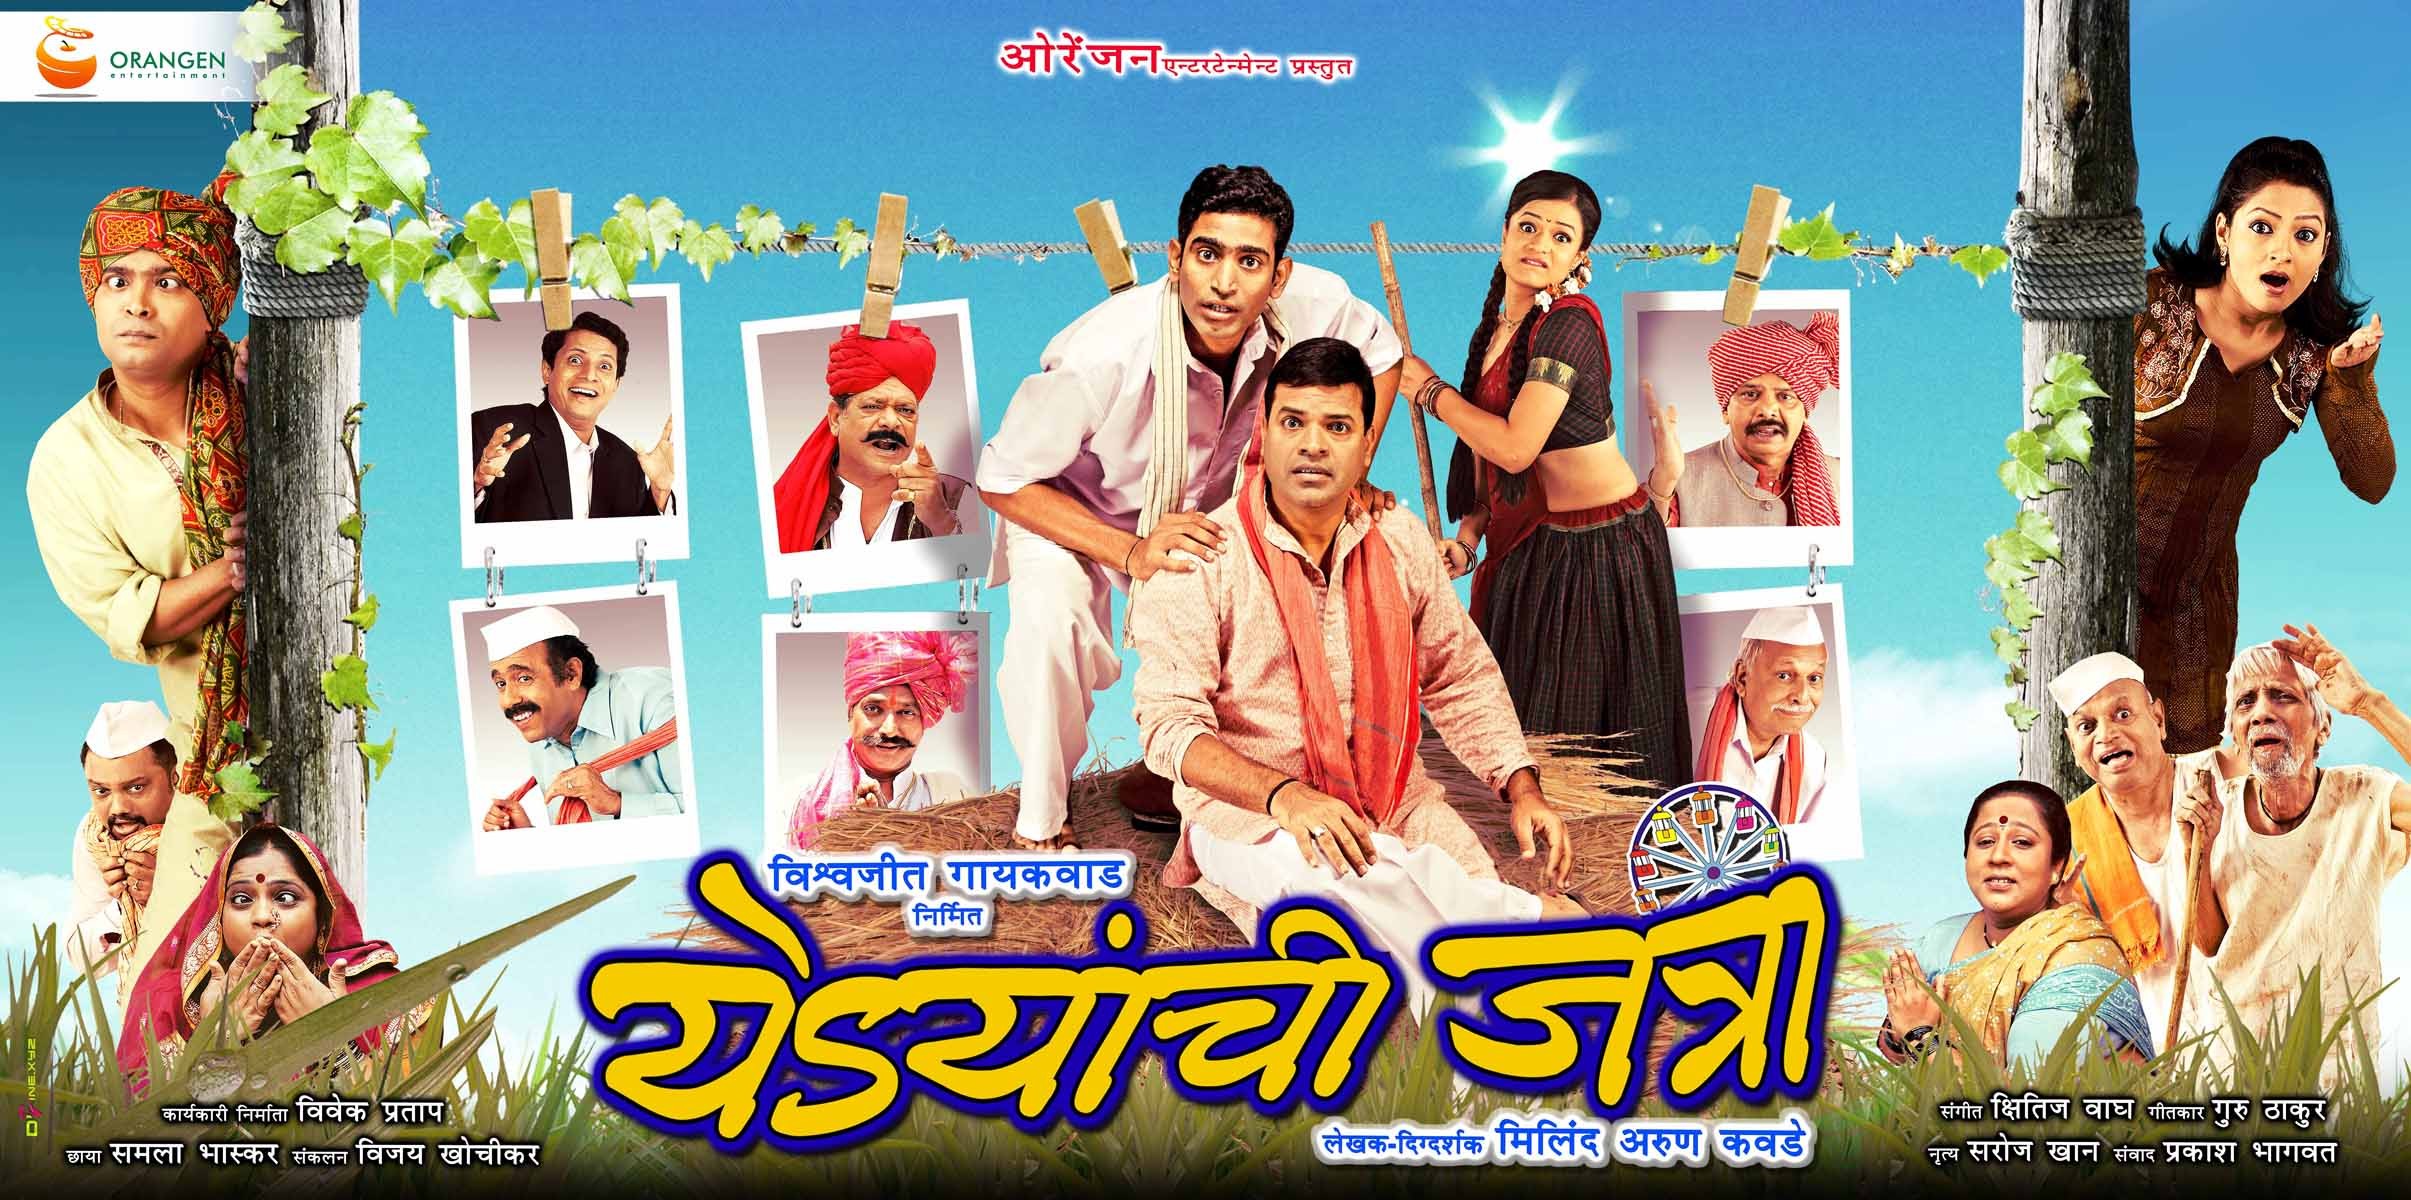 Mega Sized Movie Poster Image for Yedyanchi Jatraa (#2 of 7)